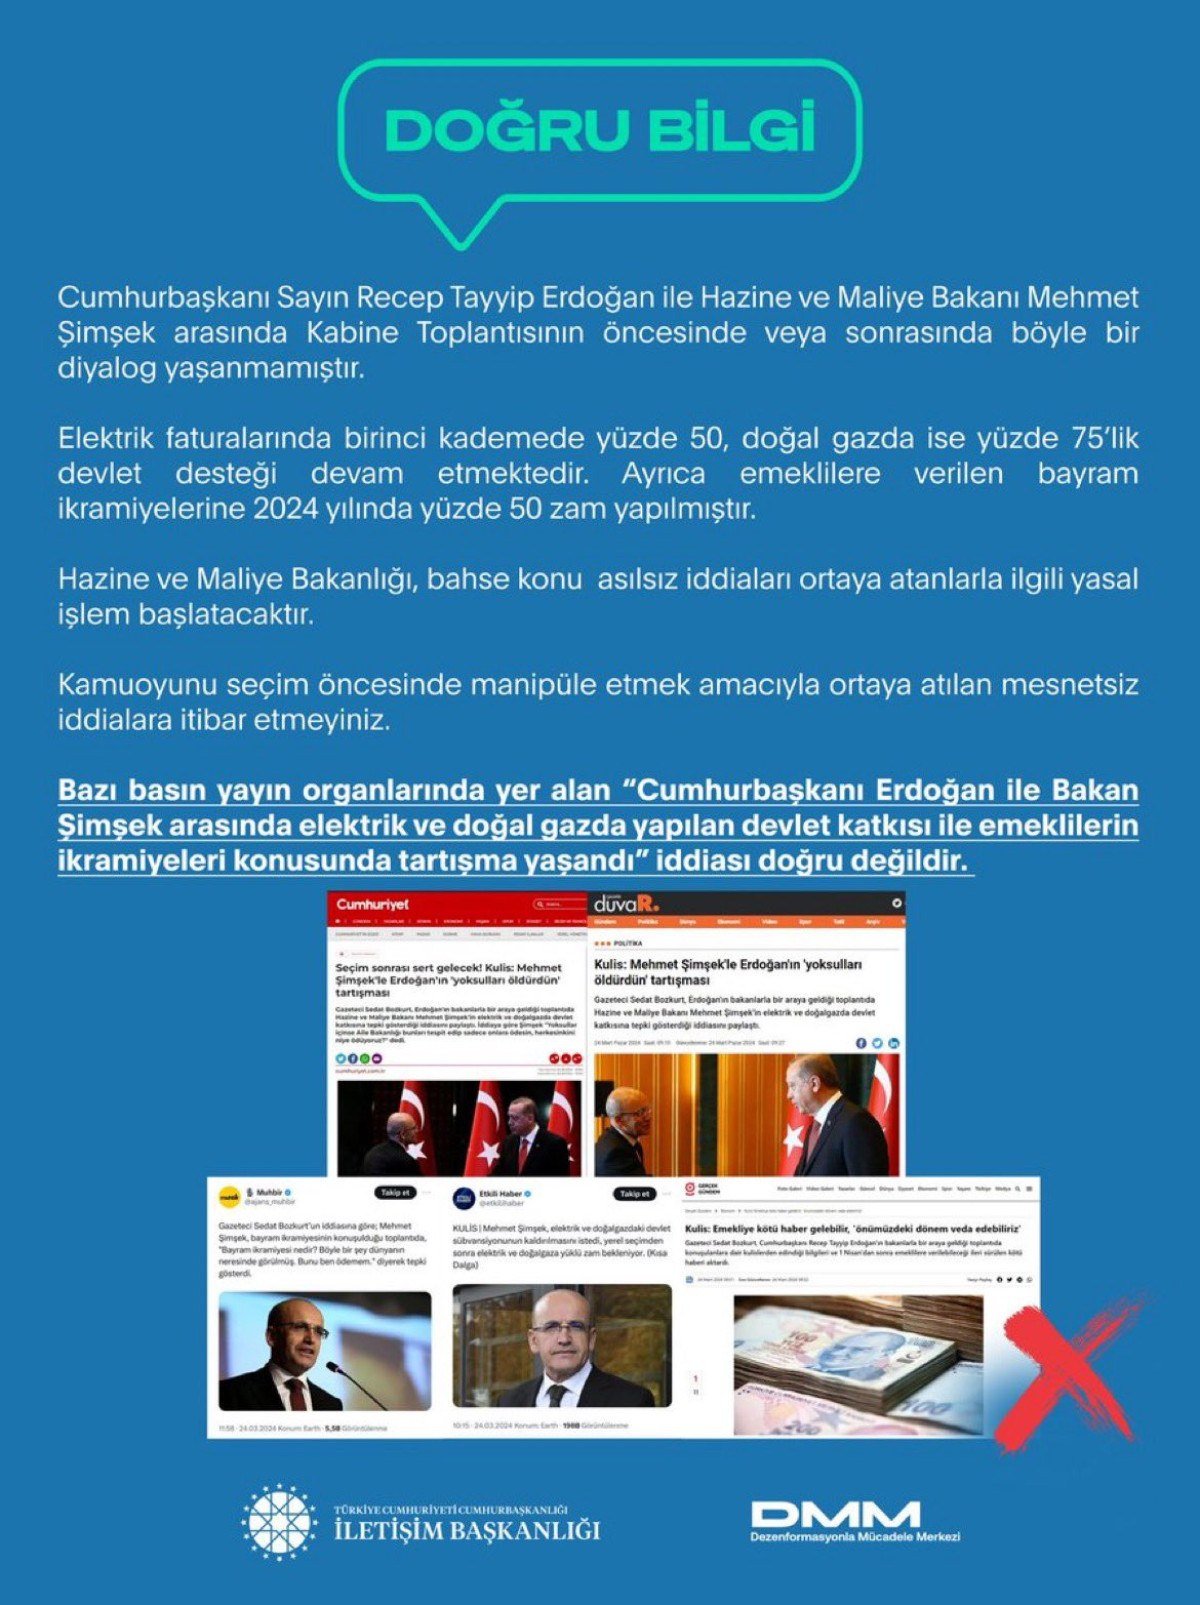 1711290016 134 Cumhurbaskani Erdogan ile Bakan Simsek arasinda tartisma yasandigi iddialari yalanlandi